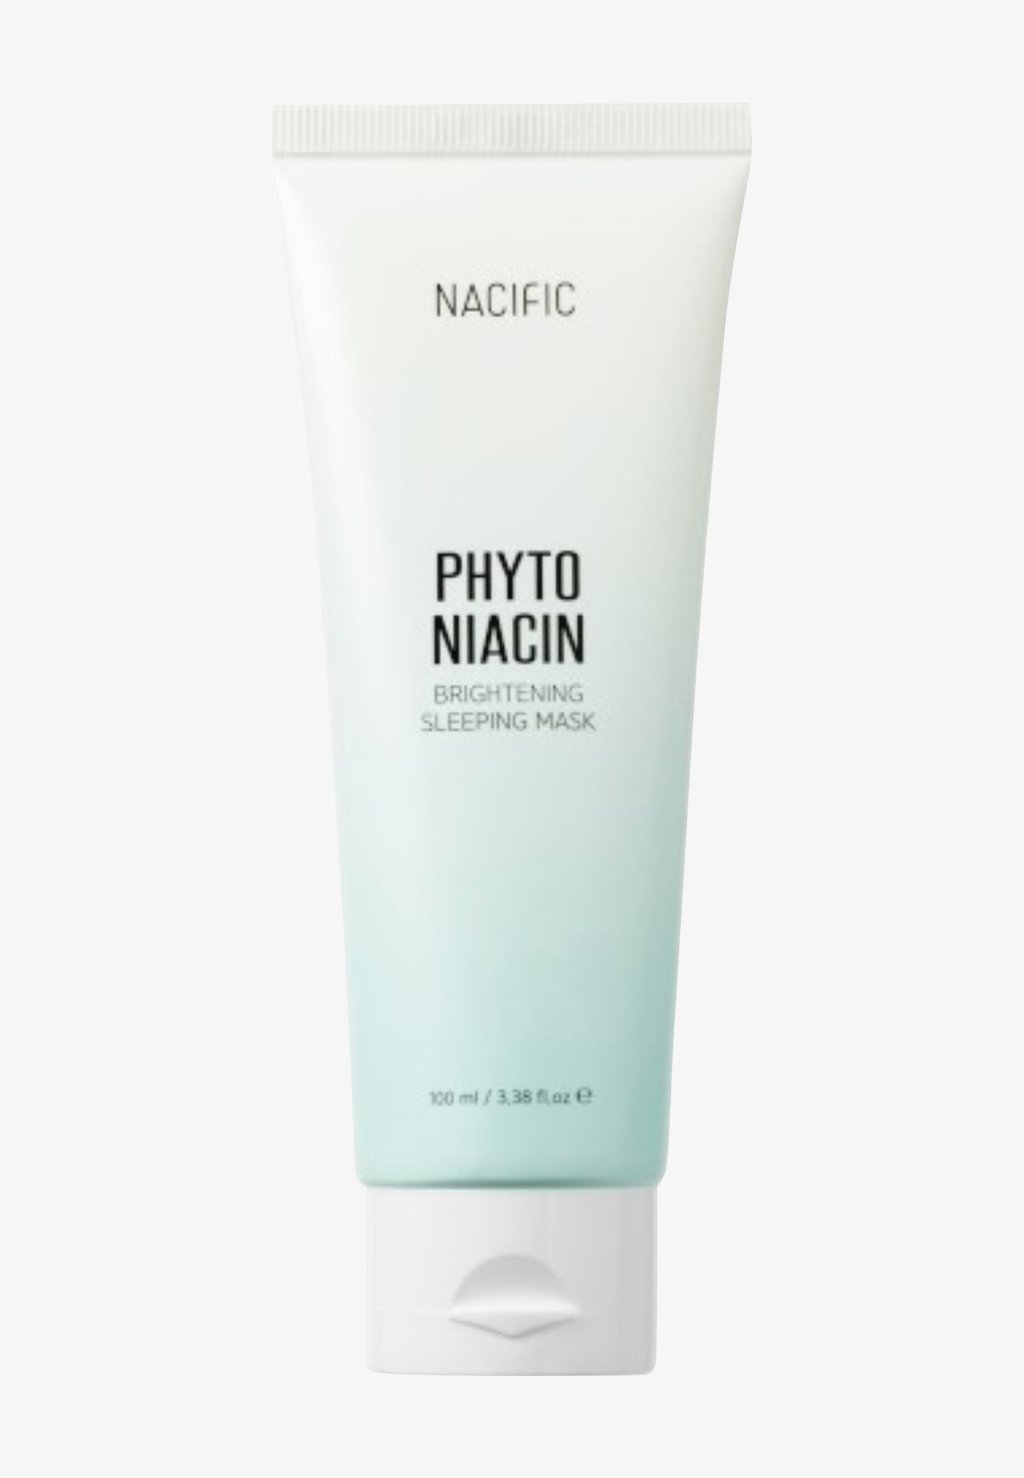 Дневной крем Phyto Niacin Brightening Sleeping Mask NACIFIC набор уходовых средств осветляющий с ниацинамидом nacific phyto niacin brightening kit